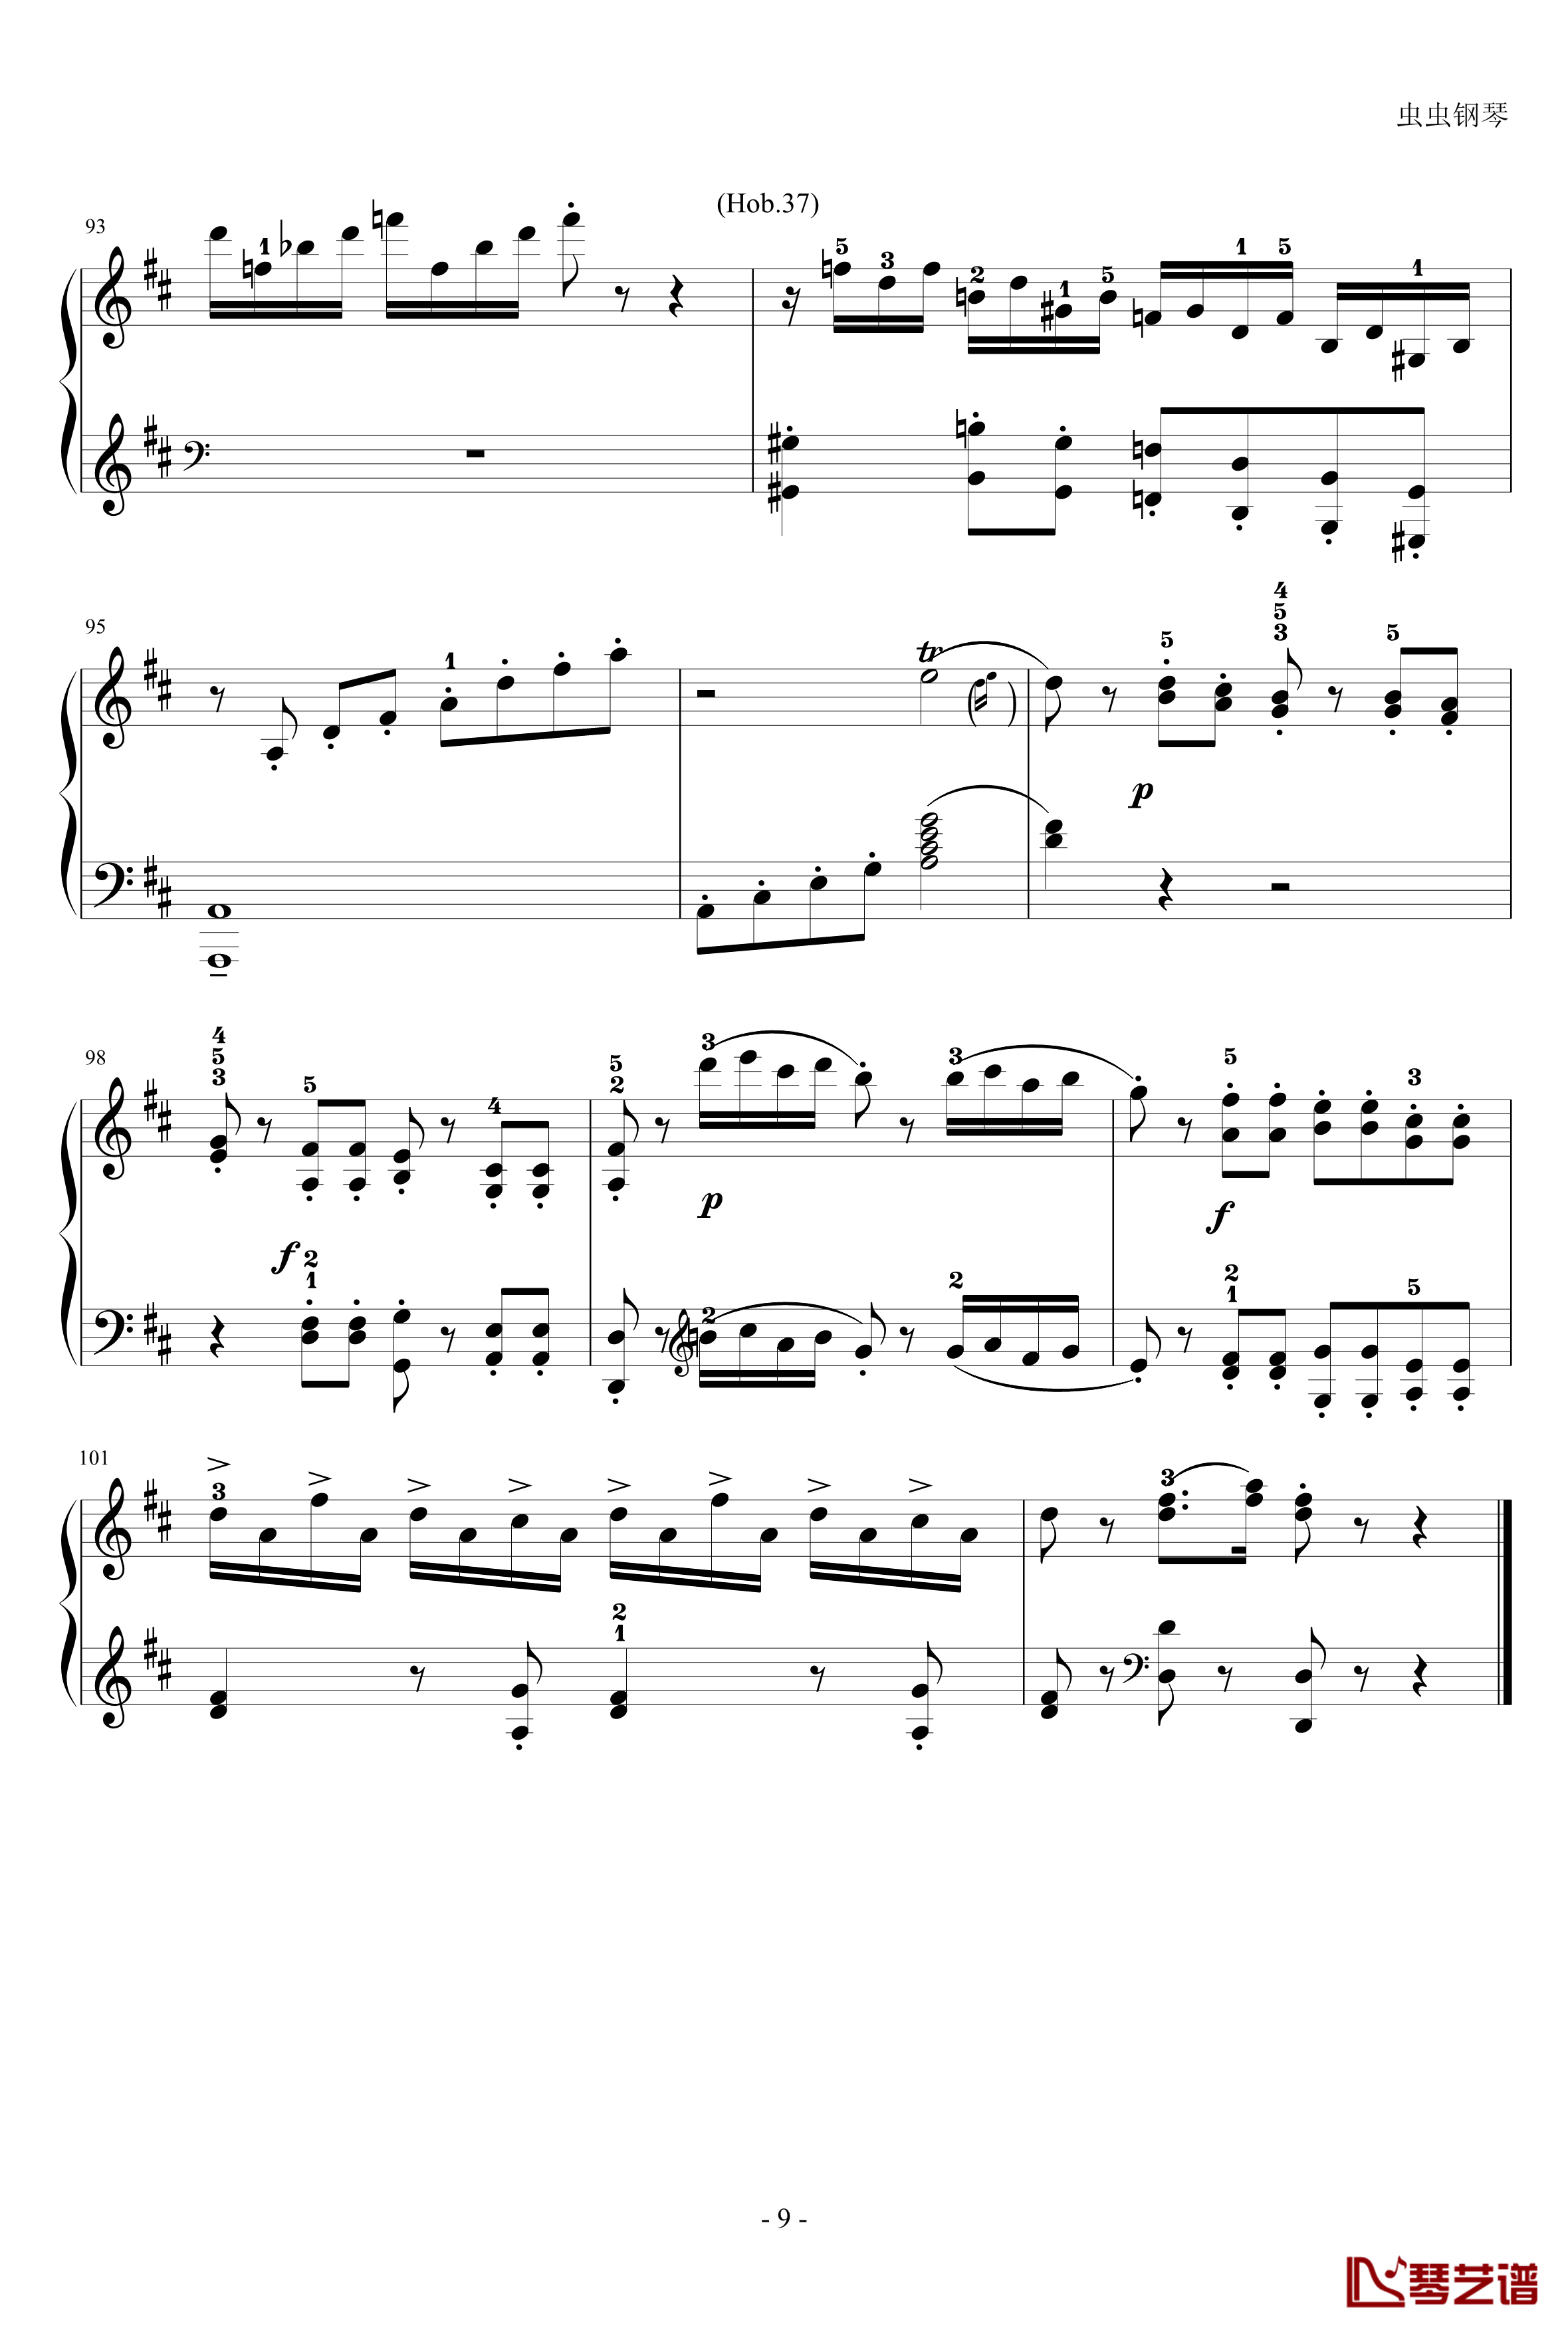 D大调奏鸣曲钢琴谱-海顿9